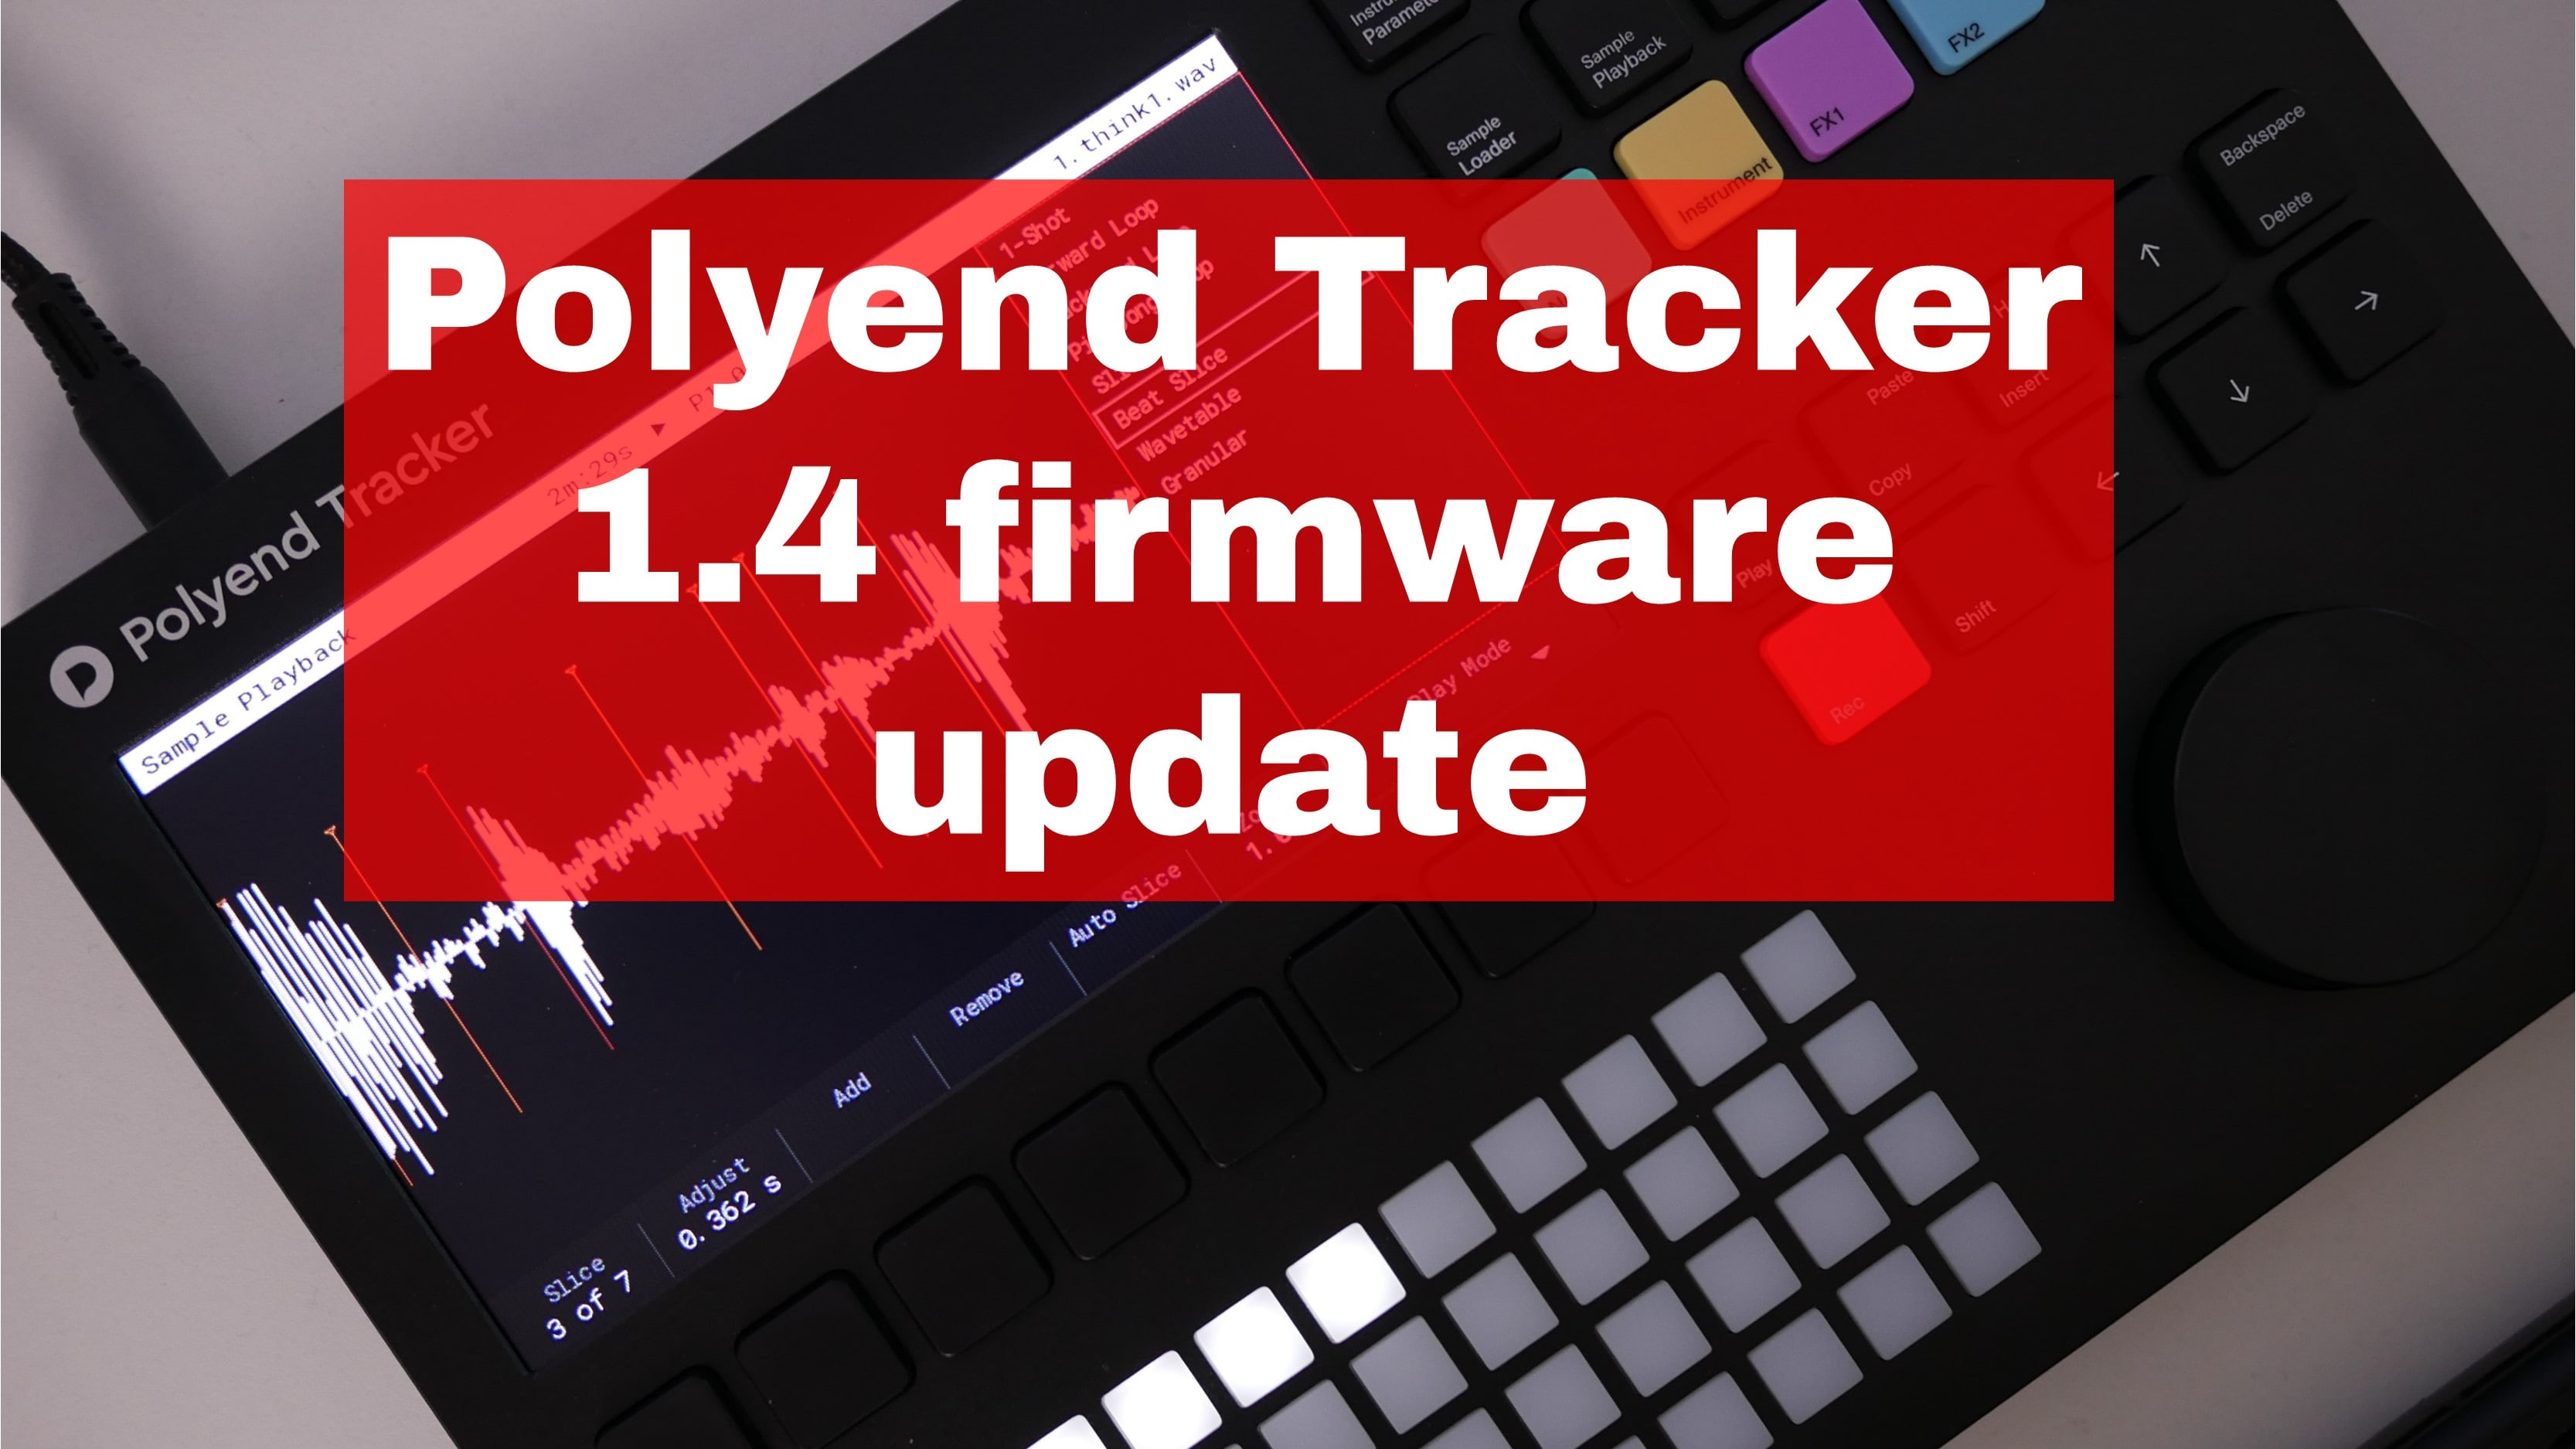 Nowy firmware Polyend Tracker w wersji 1.4